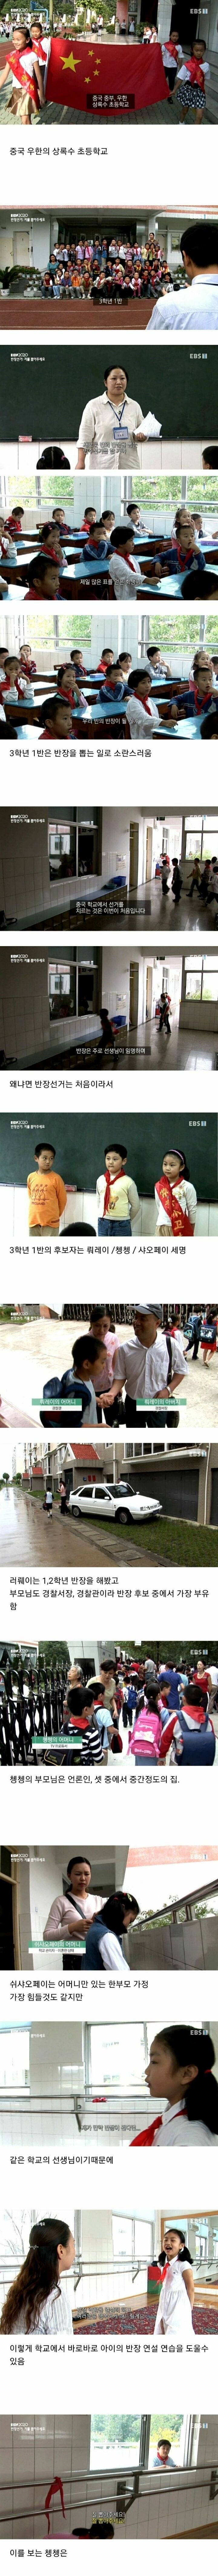 1777295b3724d1021.jpg 약 ㅅㅇ) 중국의 숨 막히는 초등학생의 정치 싸움.jpg